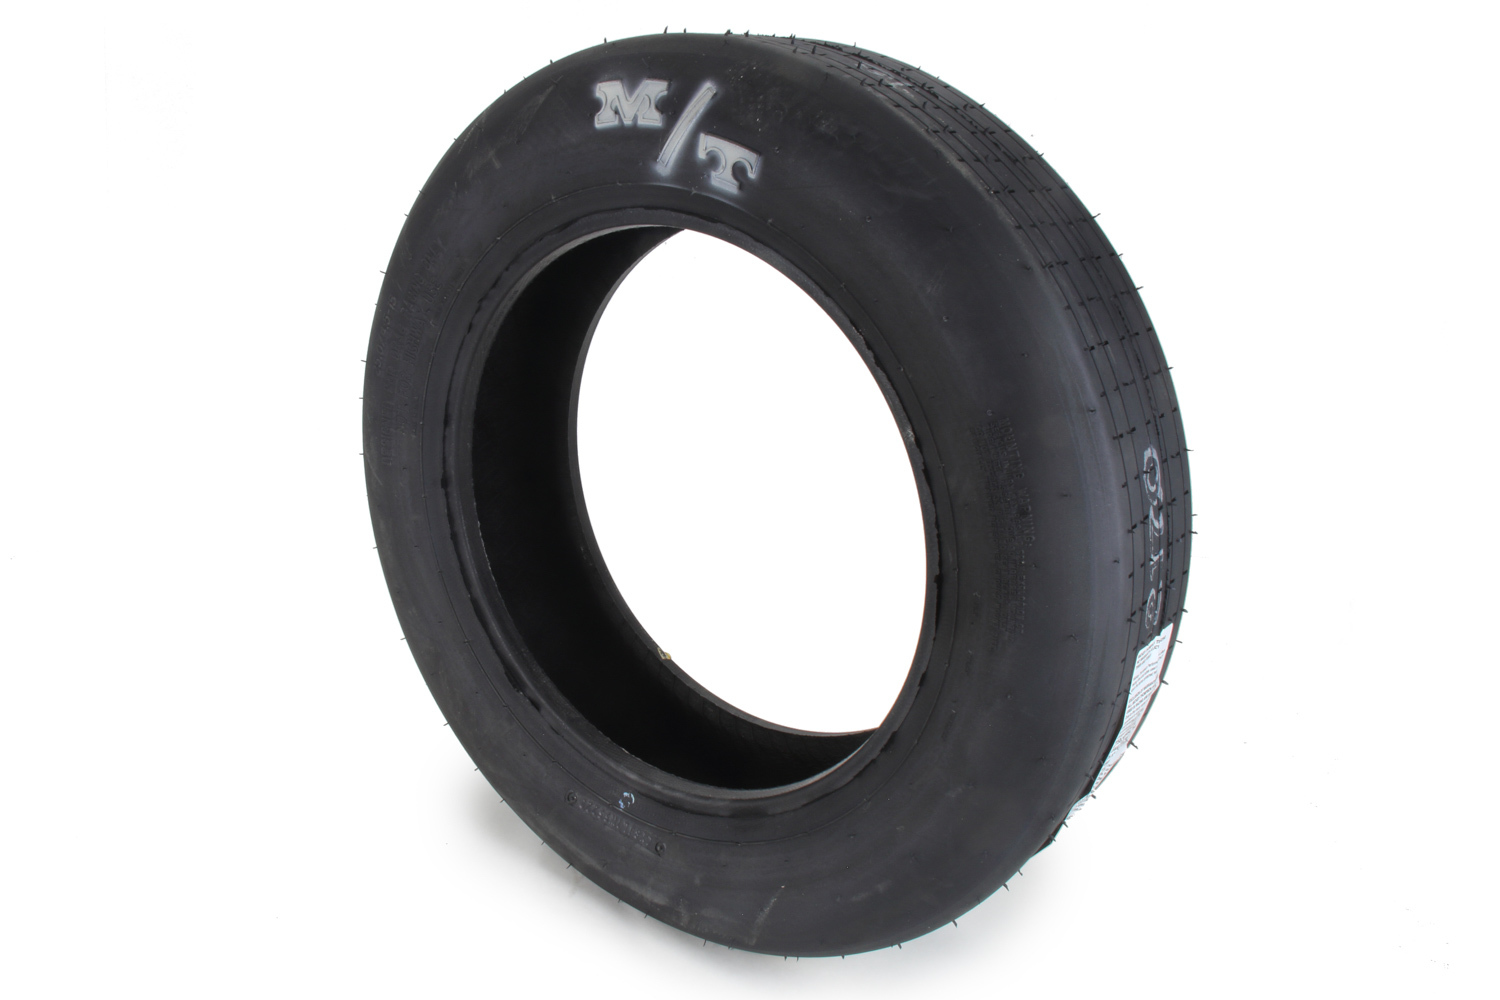 25.0/4.5-15 ET Drag Front Tire